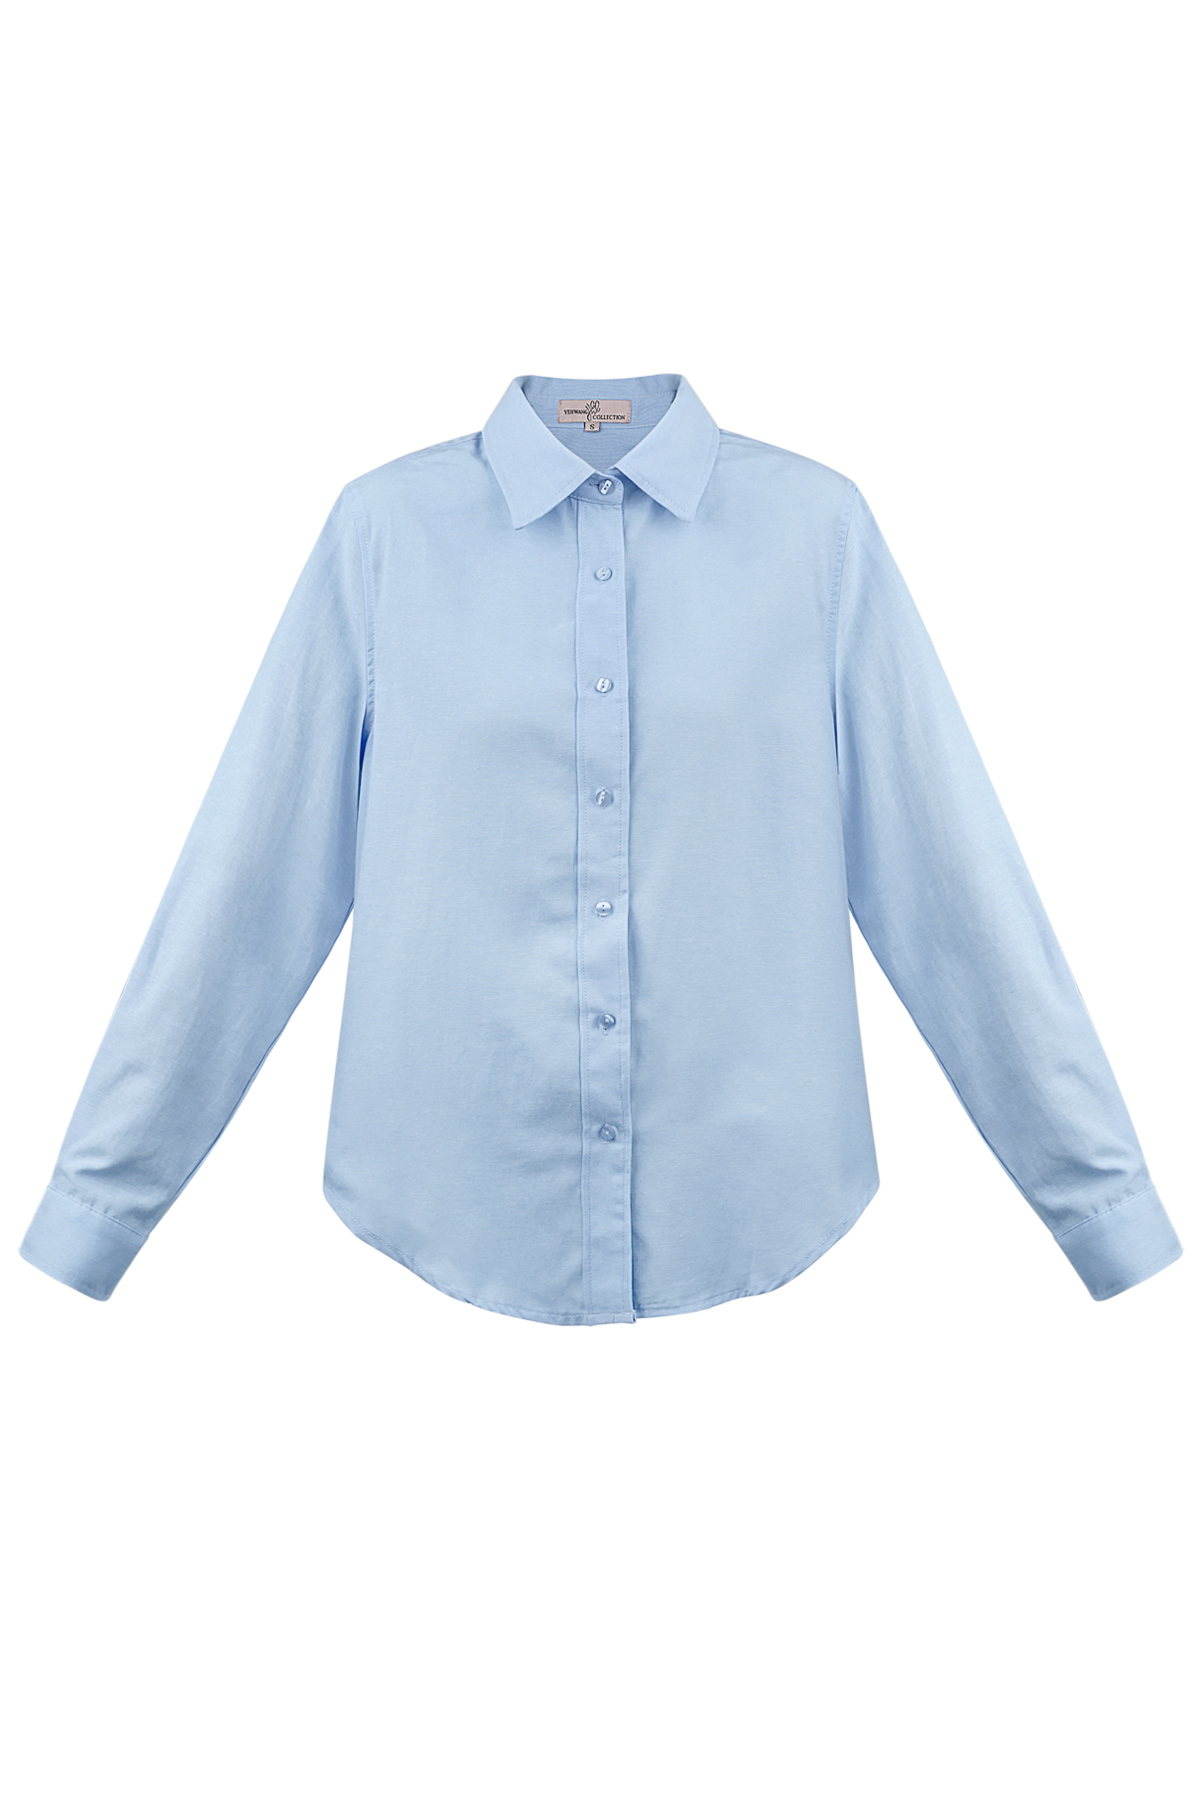 Einfache schlichte Bluse – blau h5 